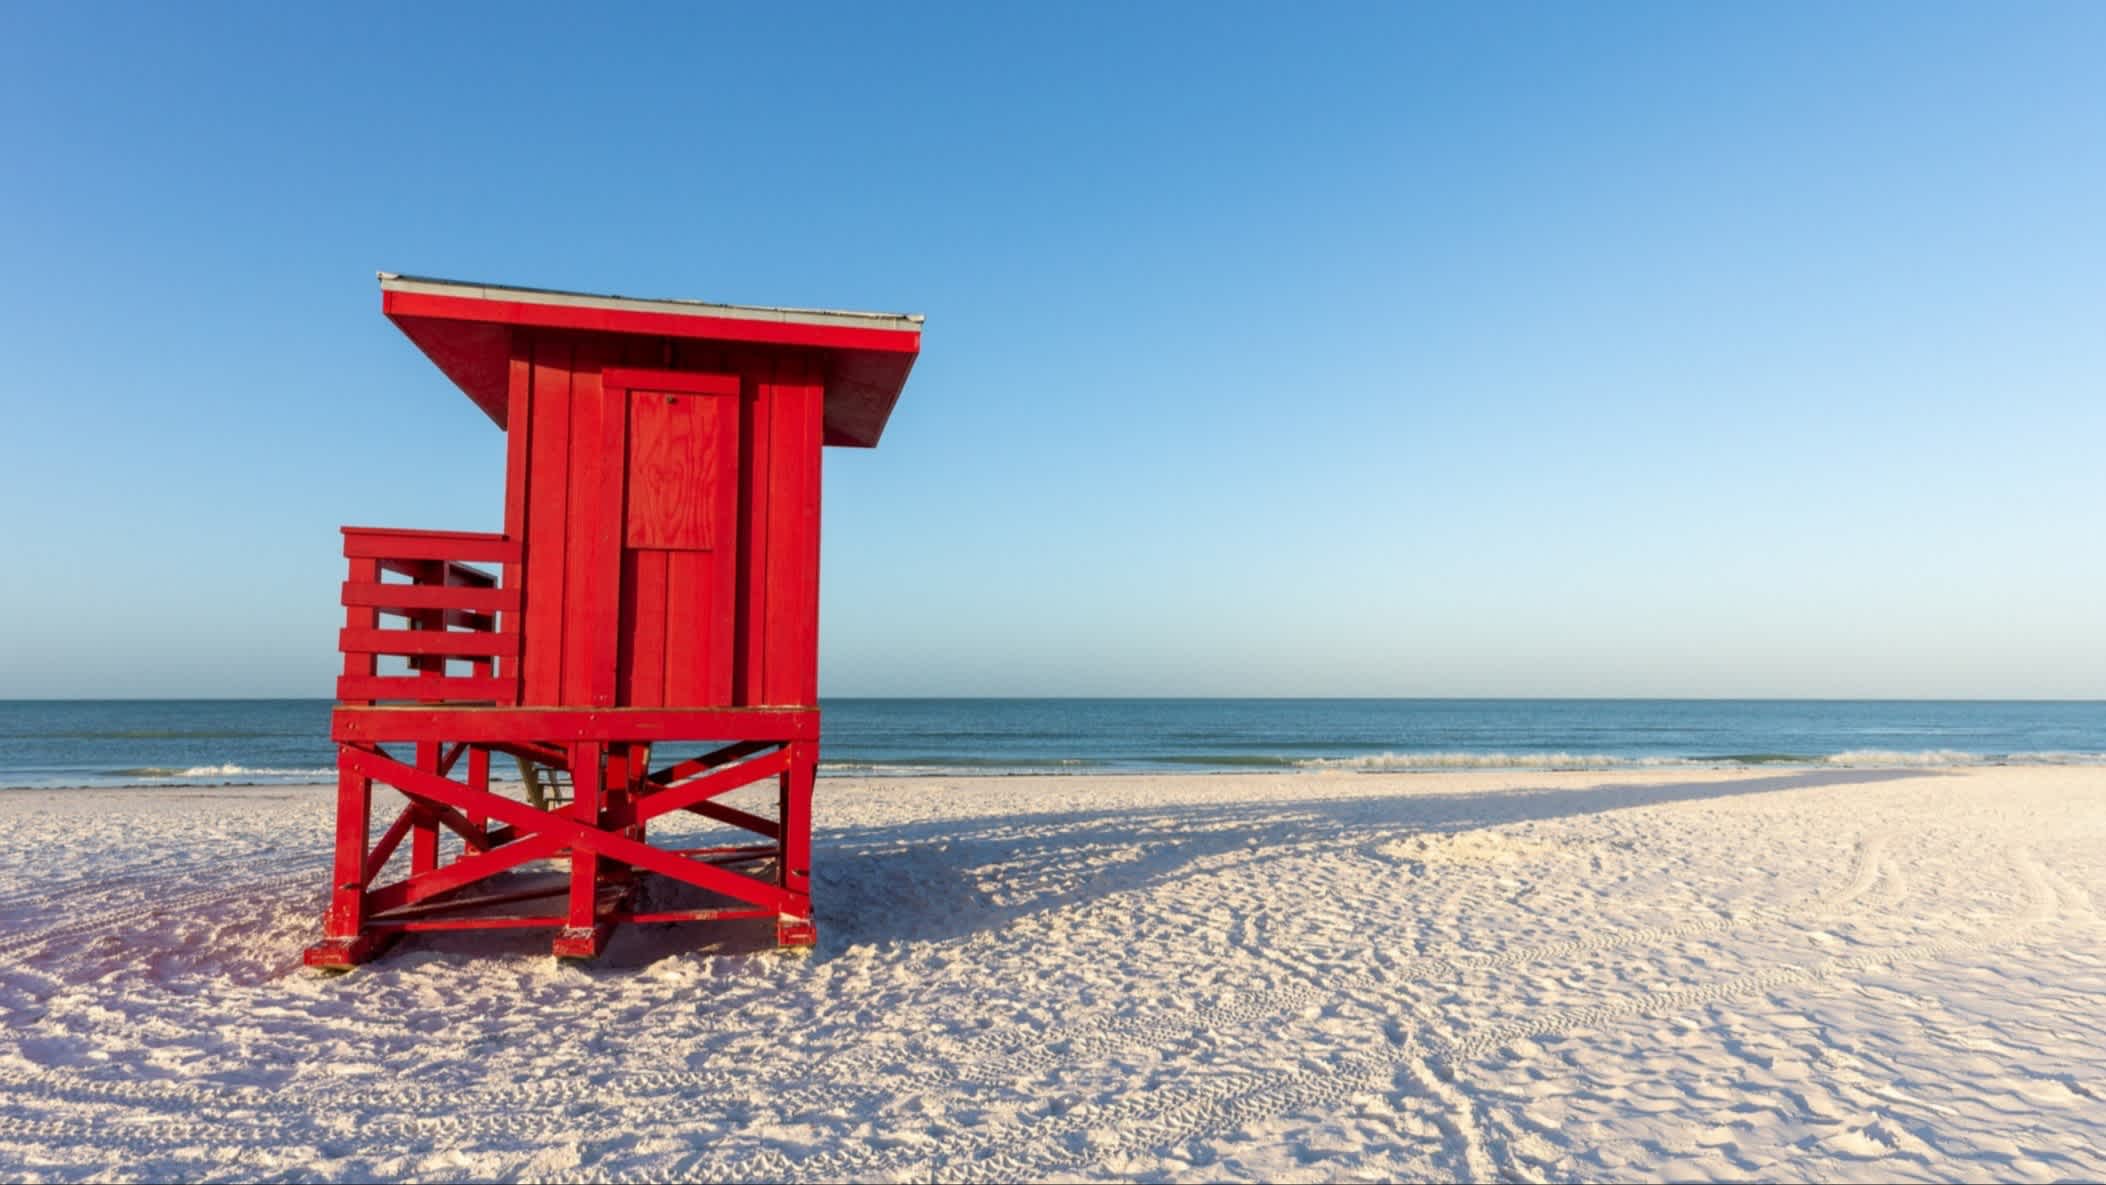 Der Strand Siesta Beach, Siesta Key, Florida, USA bei purem Sonnenschein mit Blick auf den weißen Sandstrand, das hellblaue Meer und einen feuerroten Wachturm aus Holz.